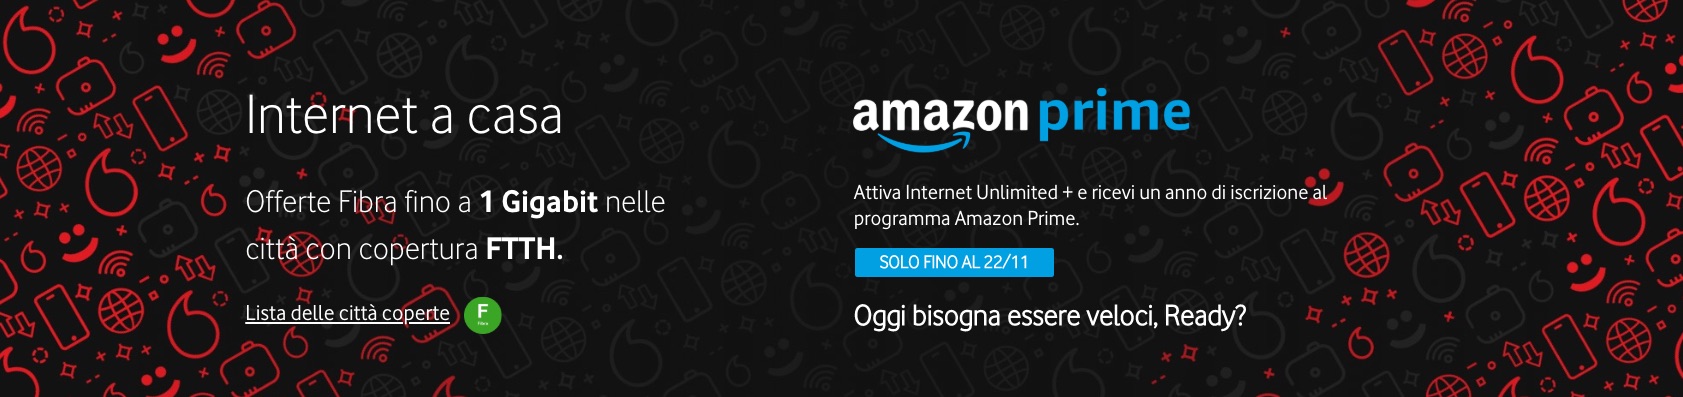 Vodafone + Amazon Prime